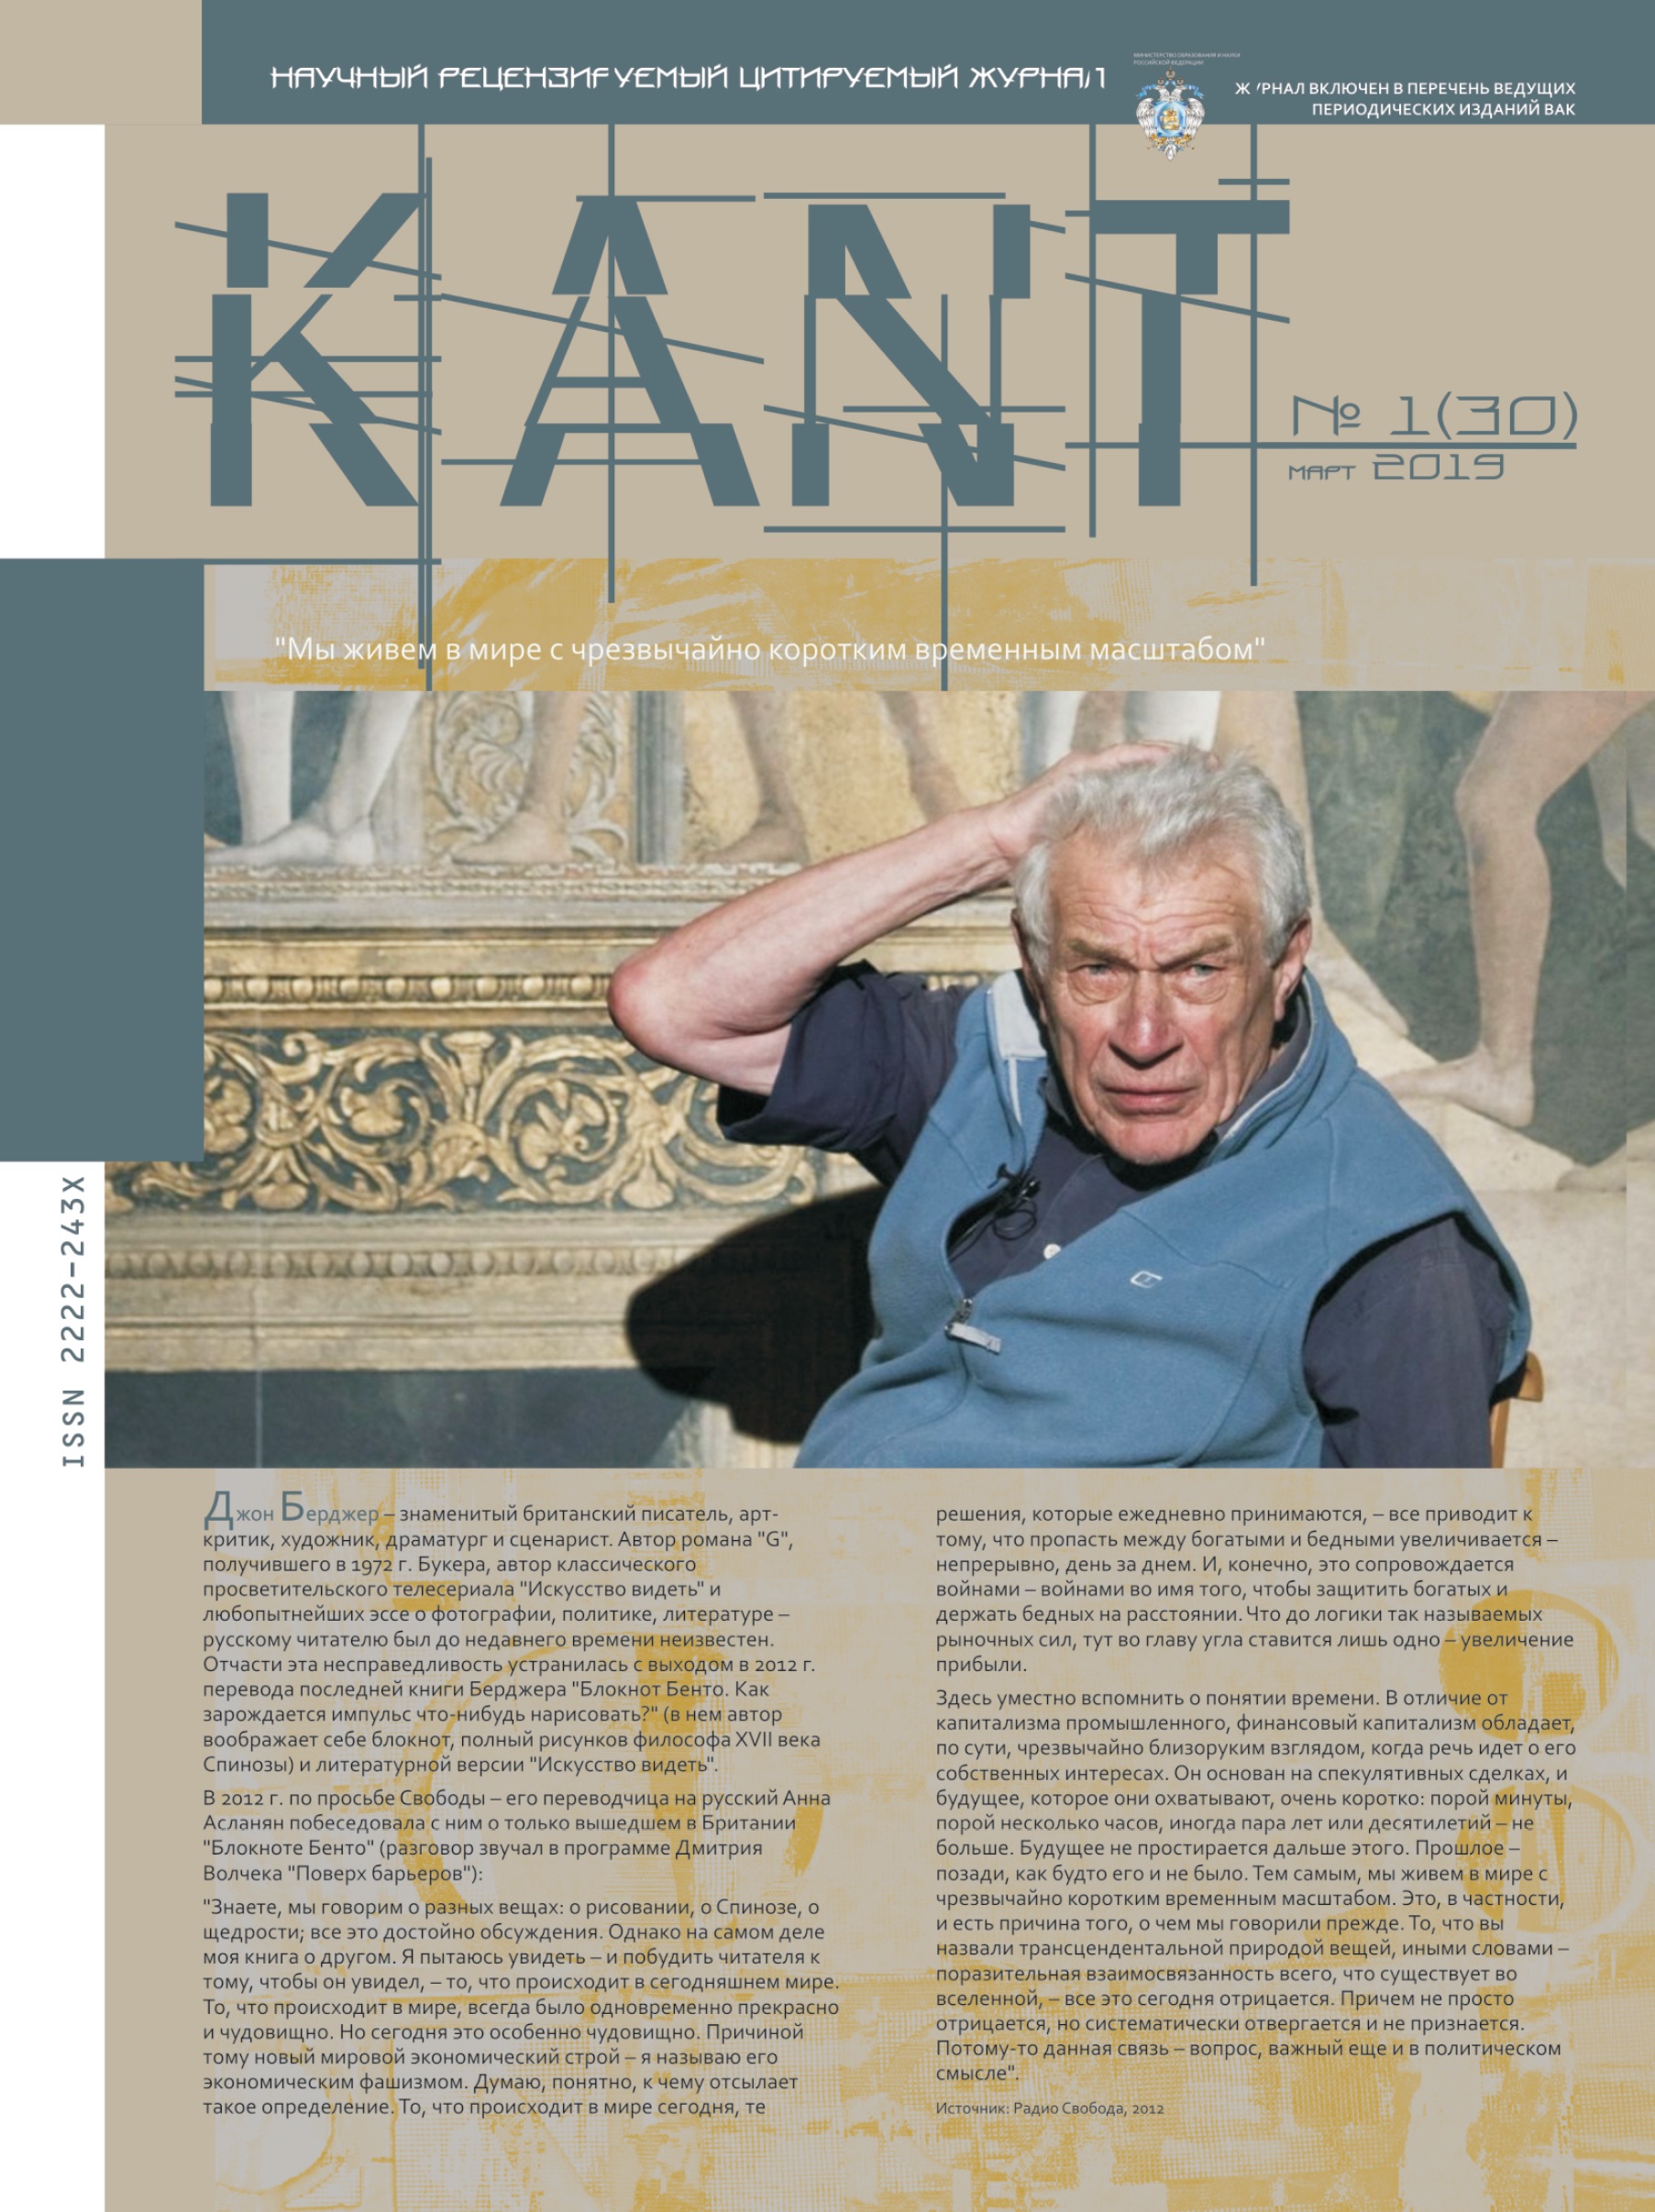 Журнал ВАК - "Kant"